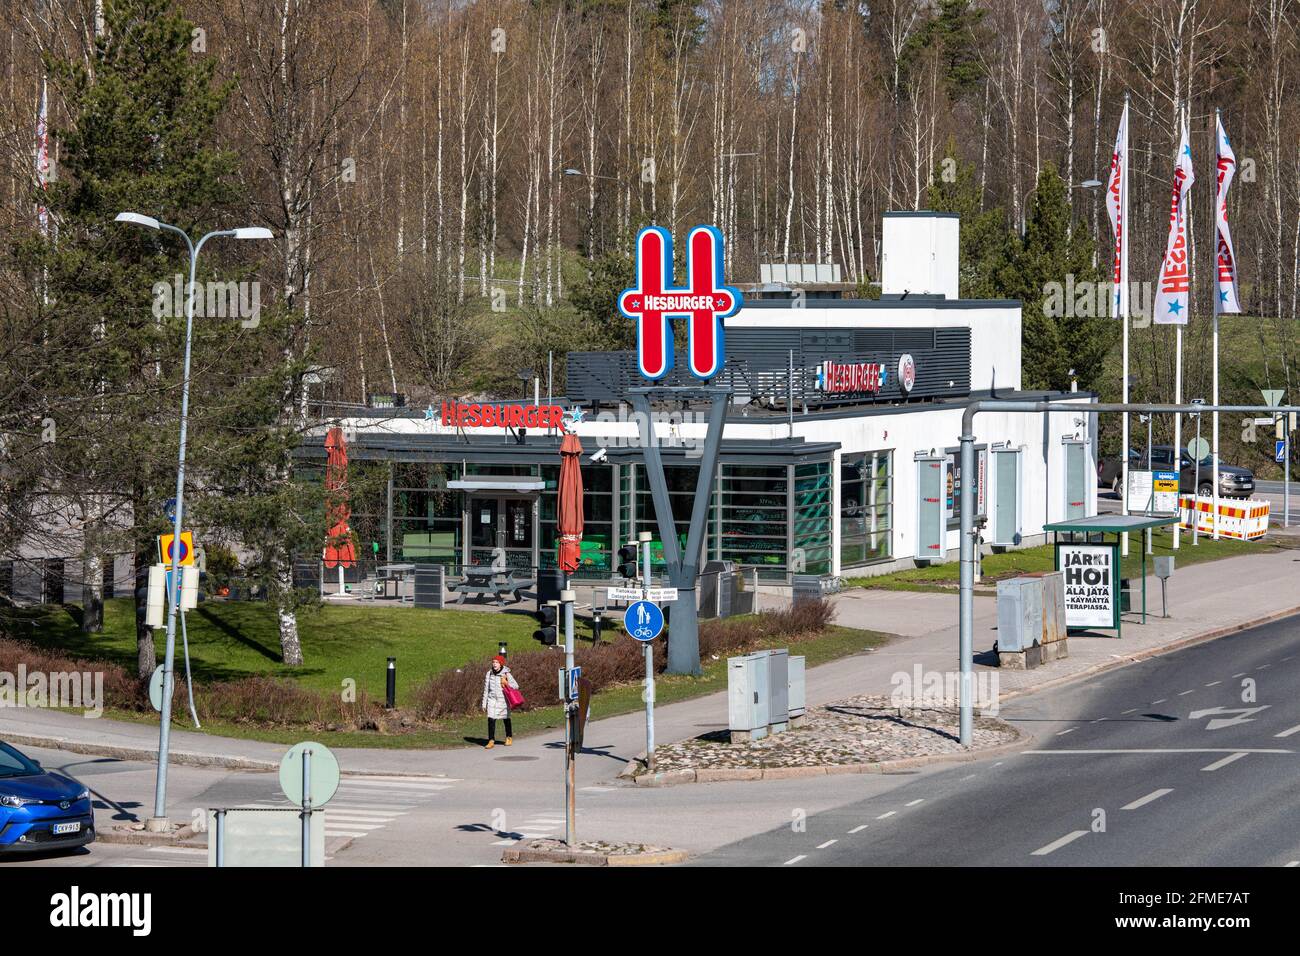 Hesburger restaurante de hamburguesas en coche en el distrito de Munkkiniemi de Helsinki, Finlandia Foto de stock